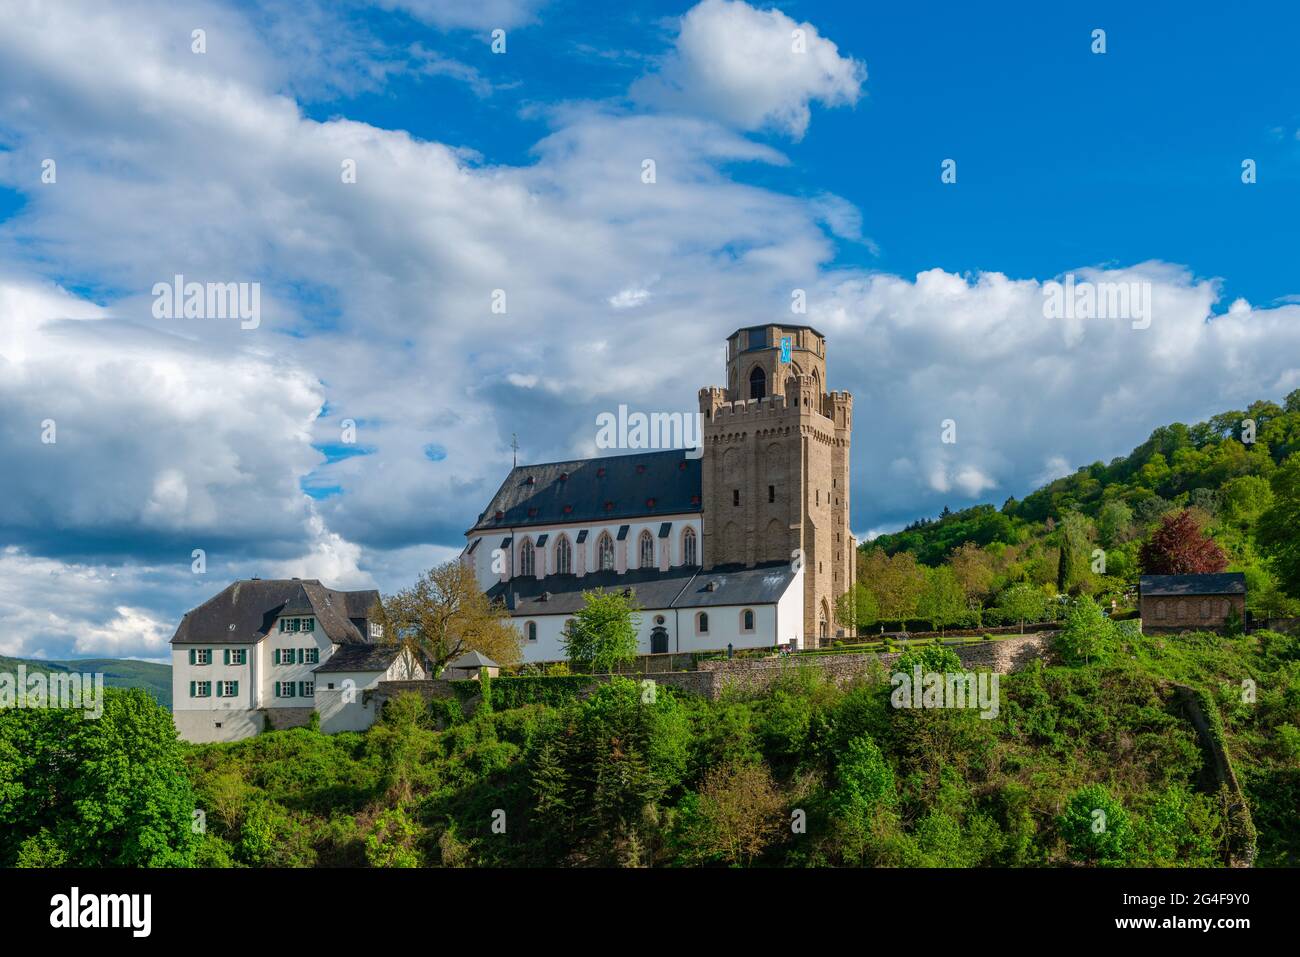 Fortificazione sacrale Chiesa di San Martino´s nella città storica di Oberwesel, Valle del Medio Reno, Patrimonio dell'Umanità dell'UNESCO, Renania-Palatinato, Germania Foto Stock